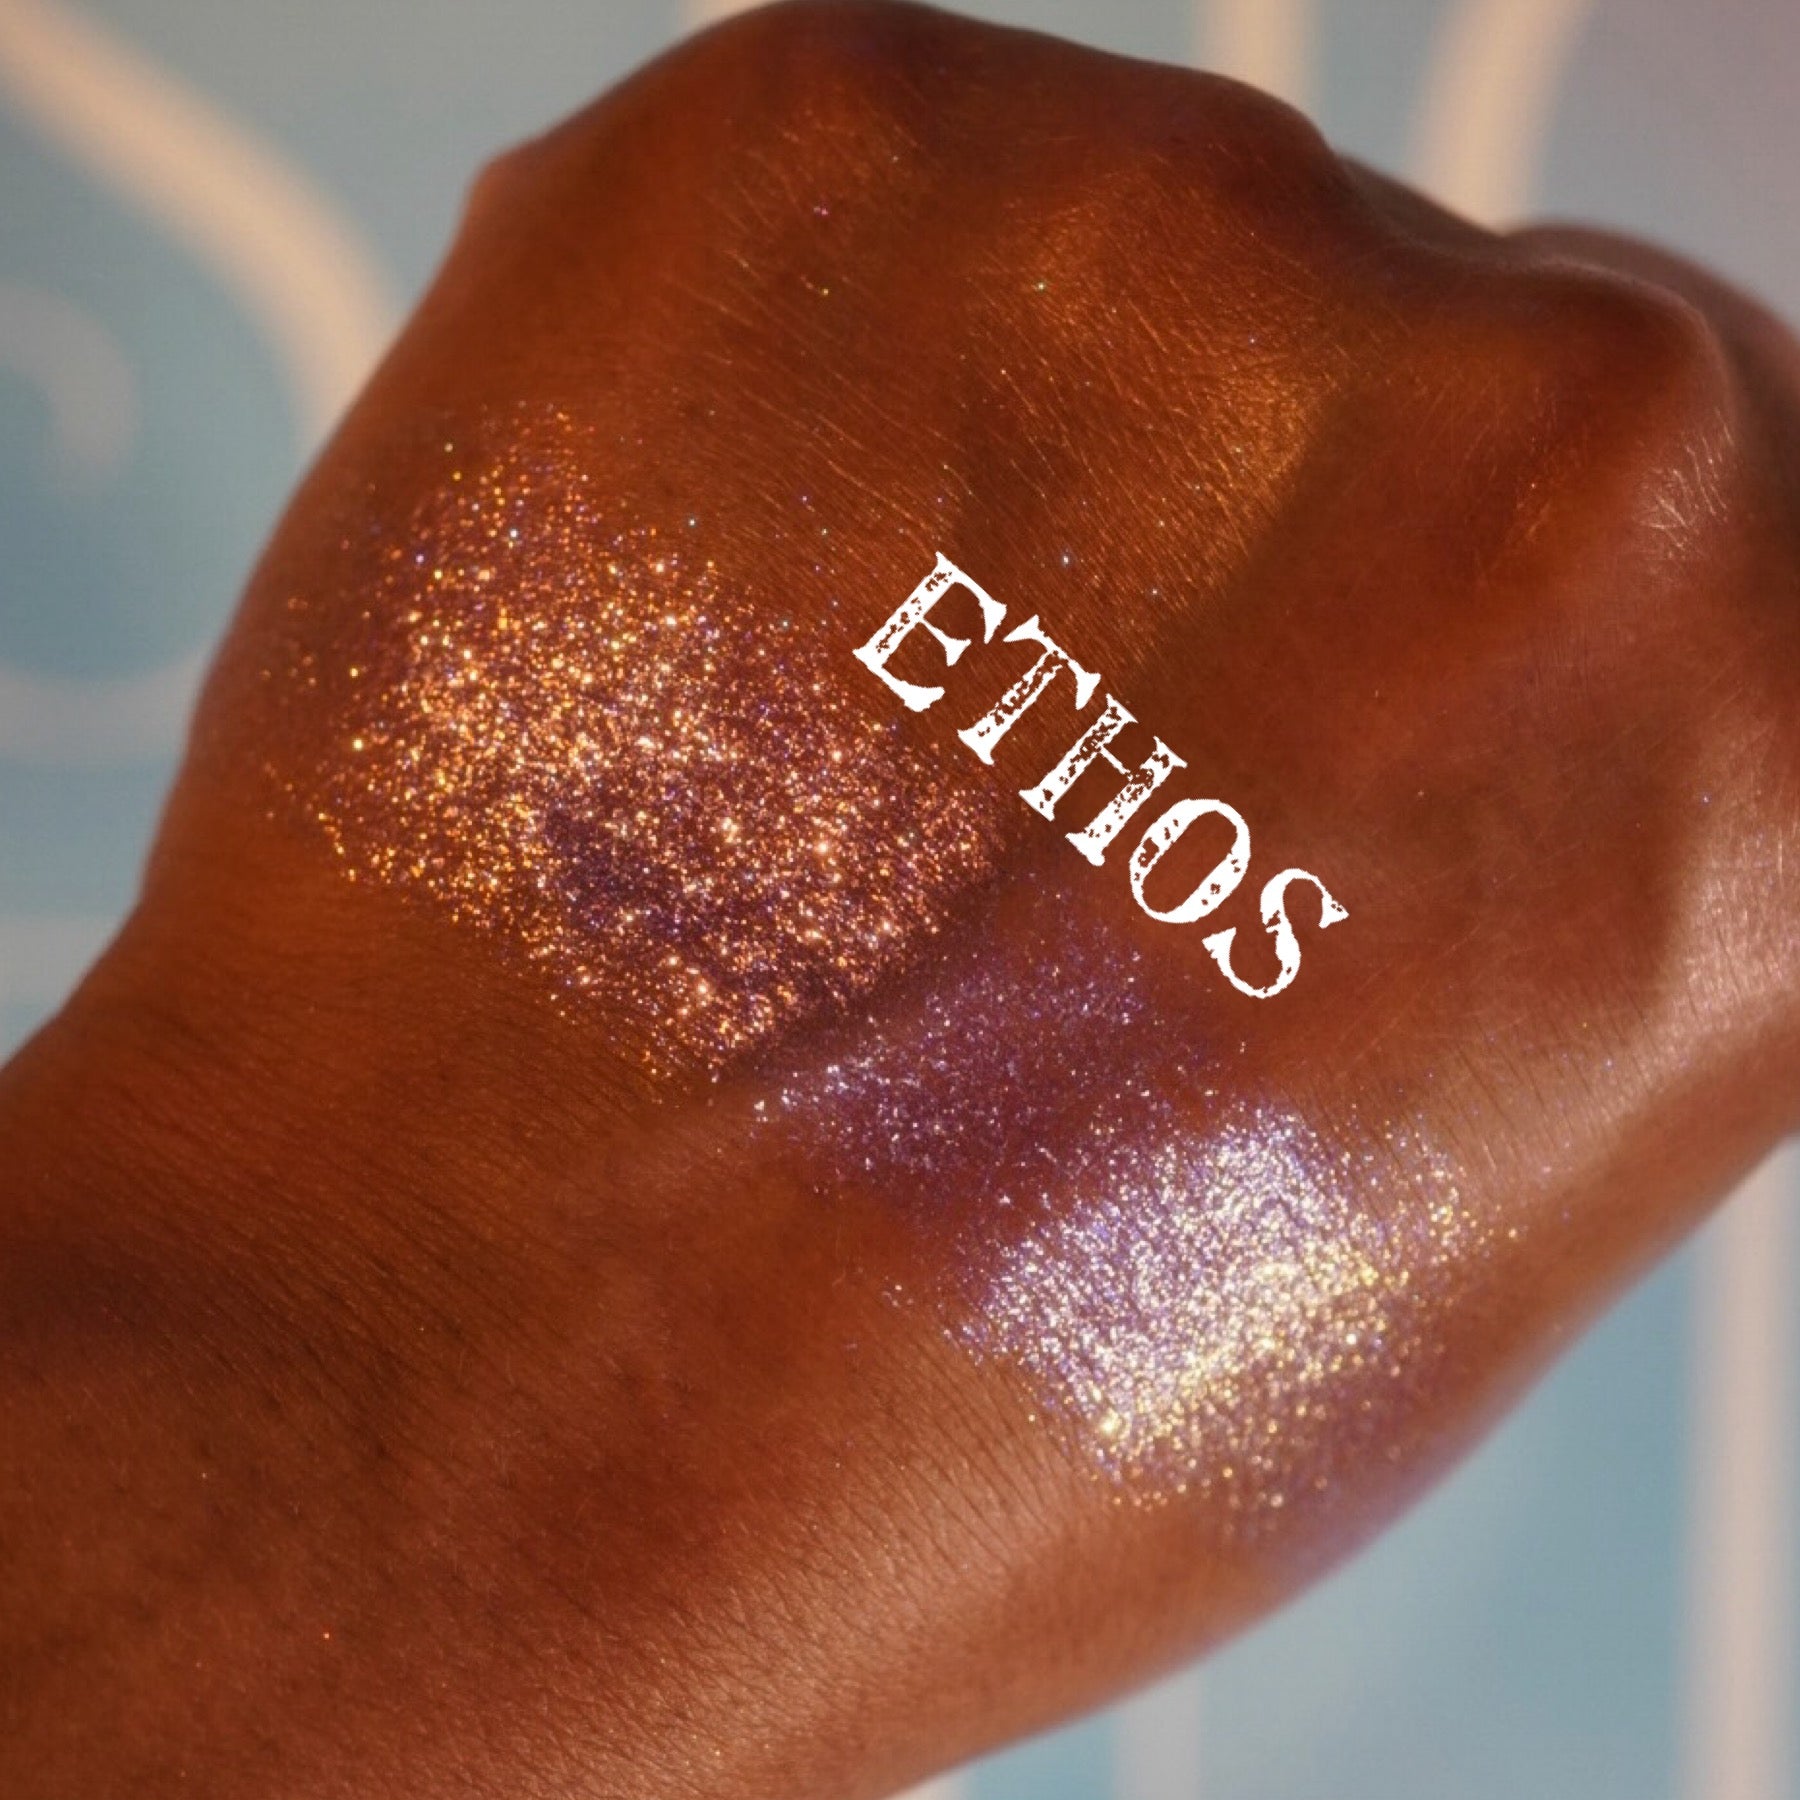 Ethos [Mystic Dreams]